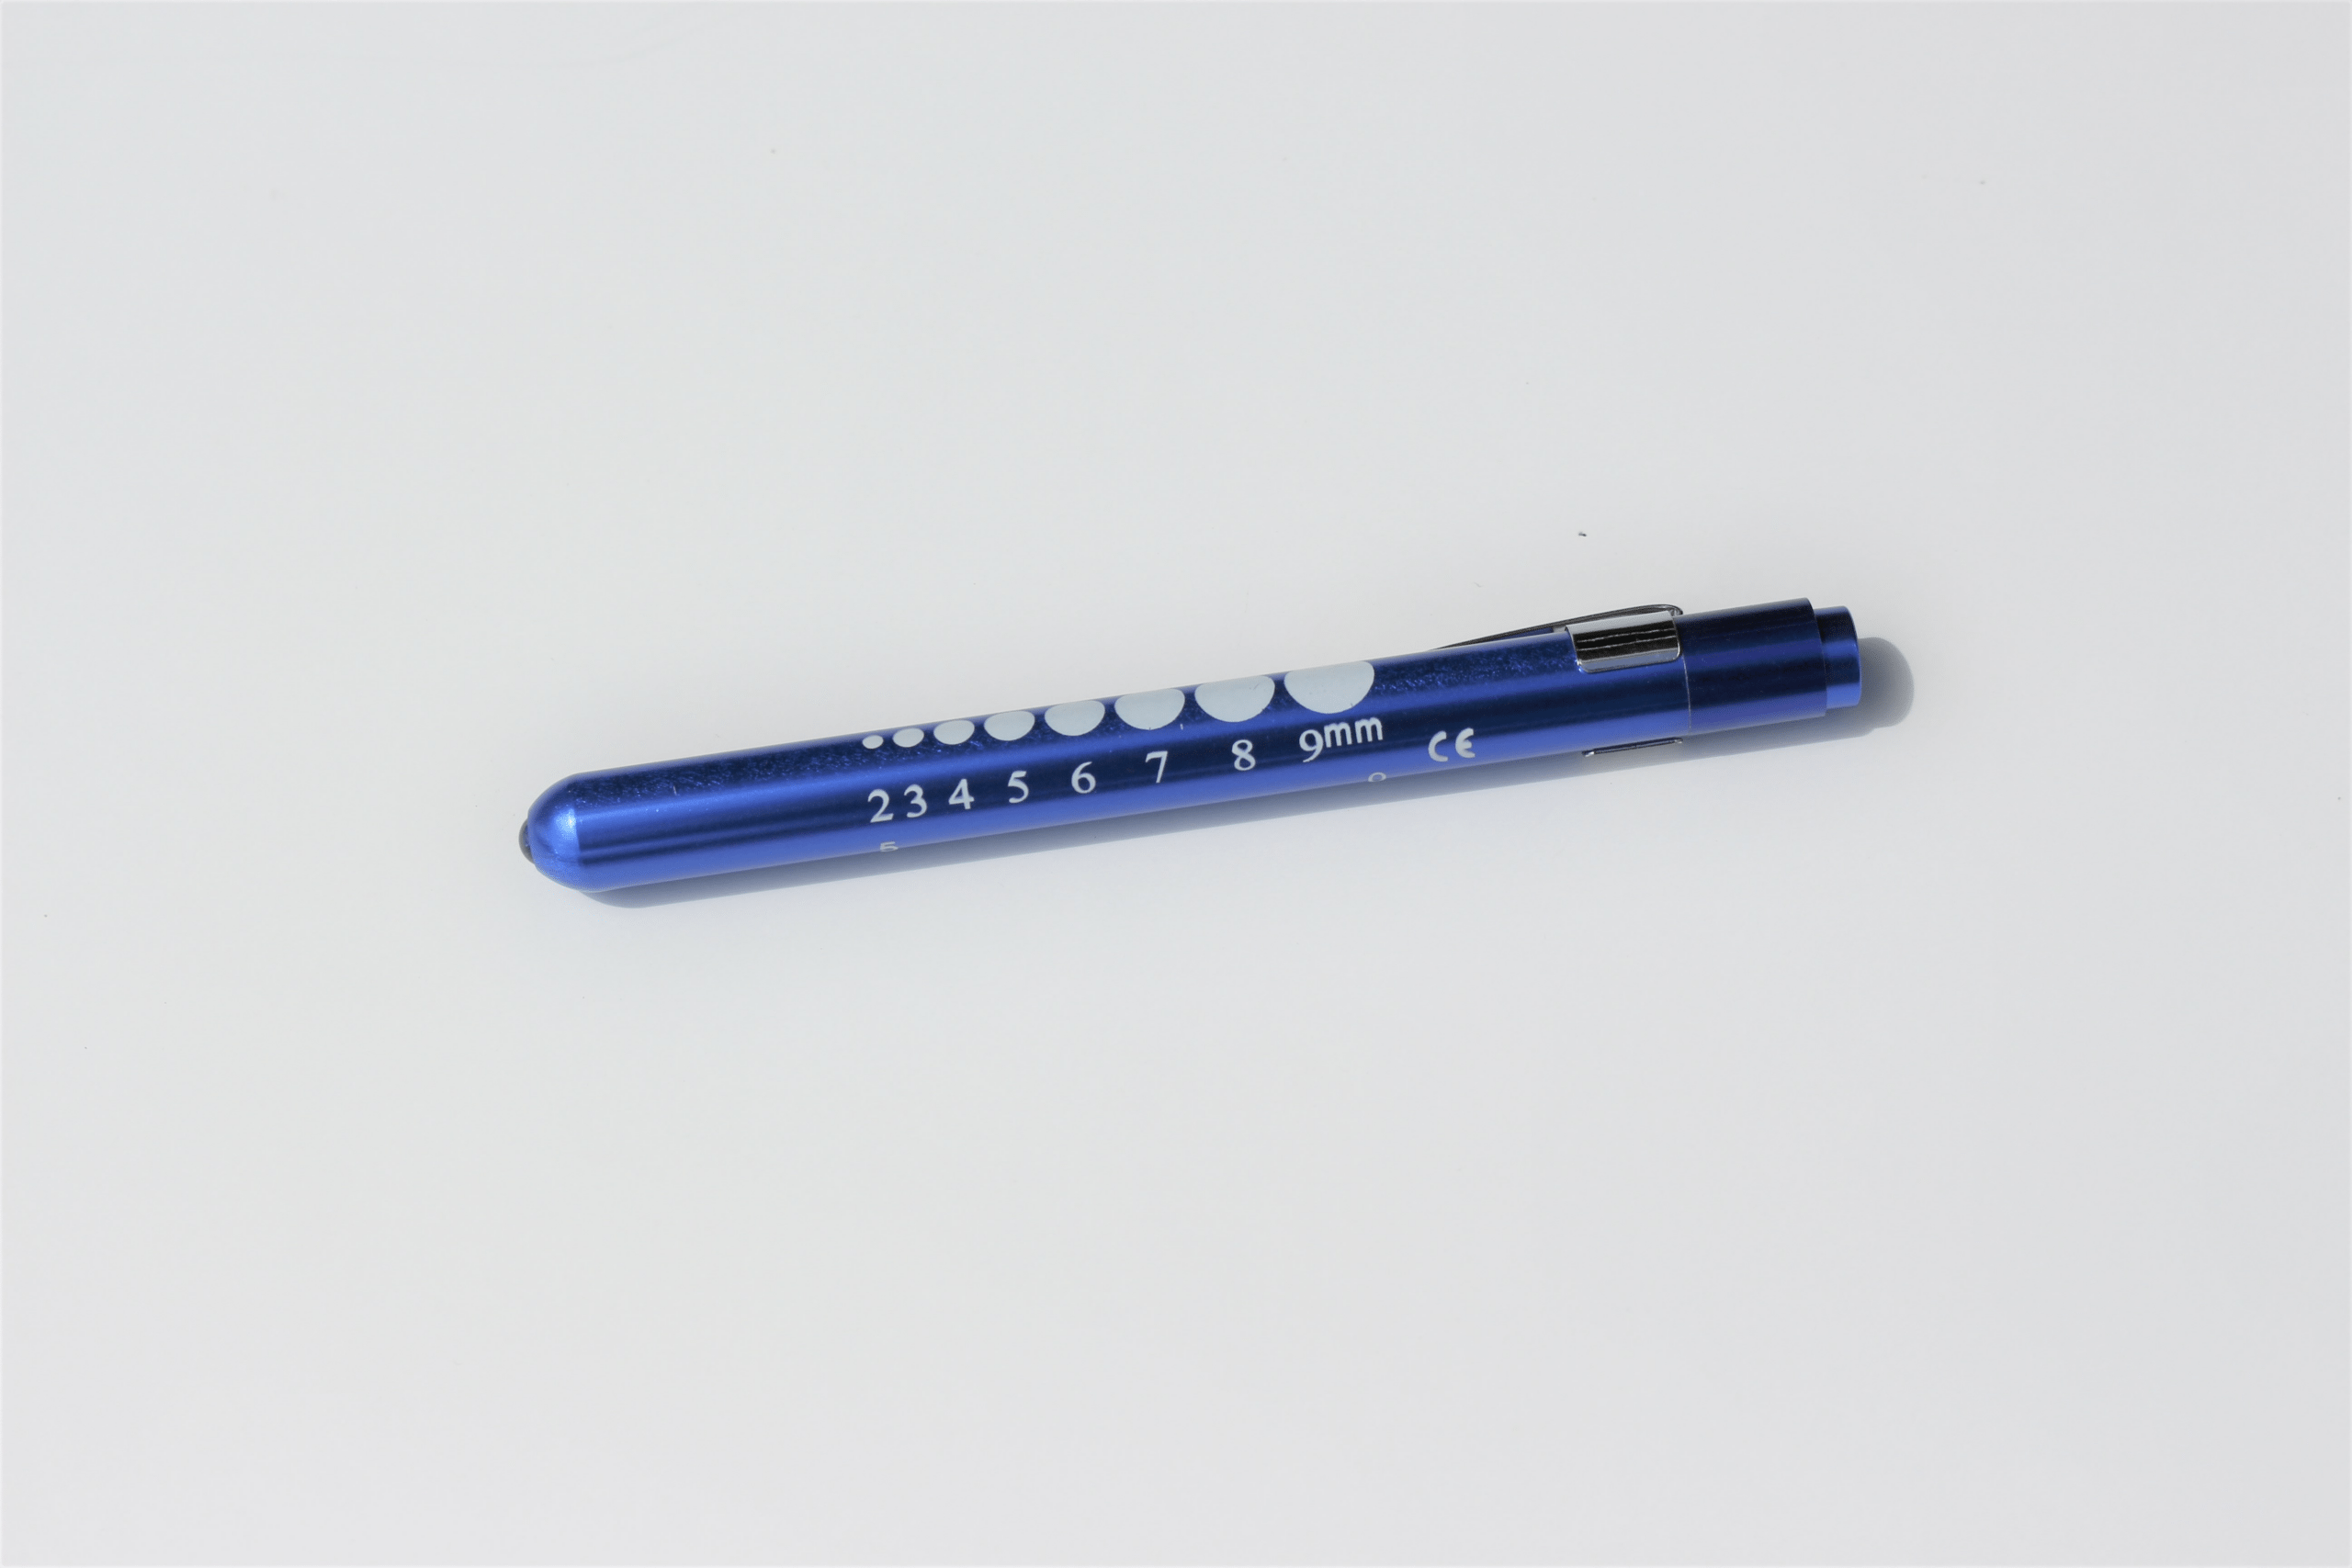 EMI - Emergency Medical Ultra-Light Pupil Gauge Penlight - Blue